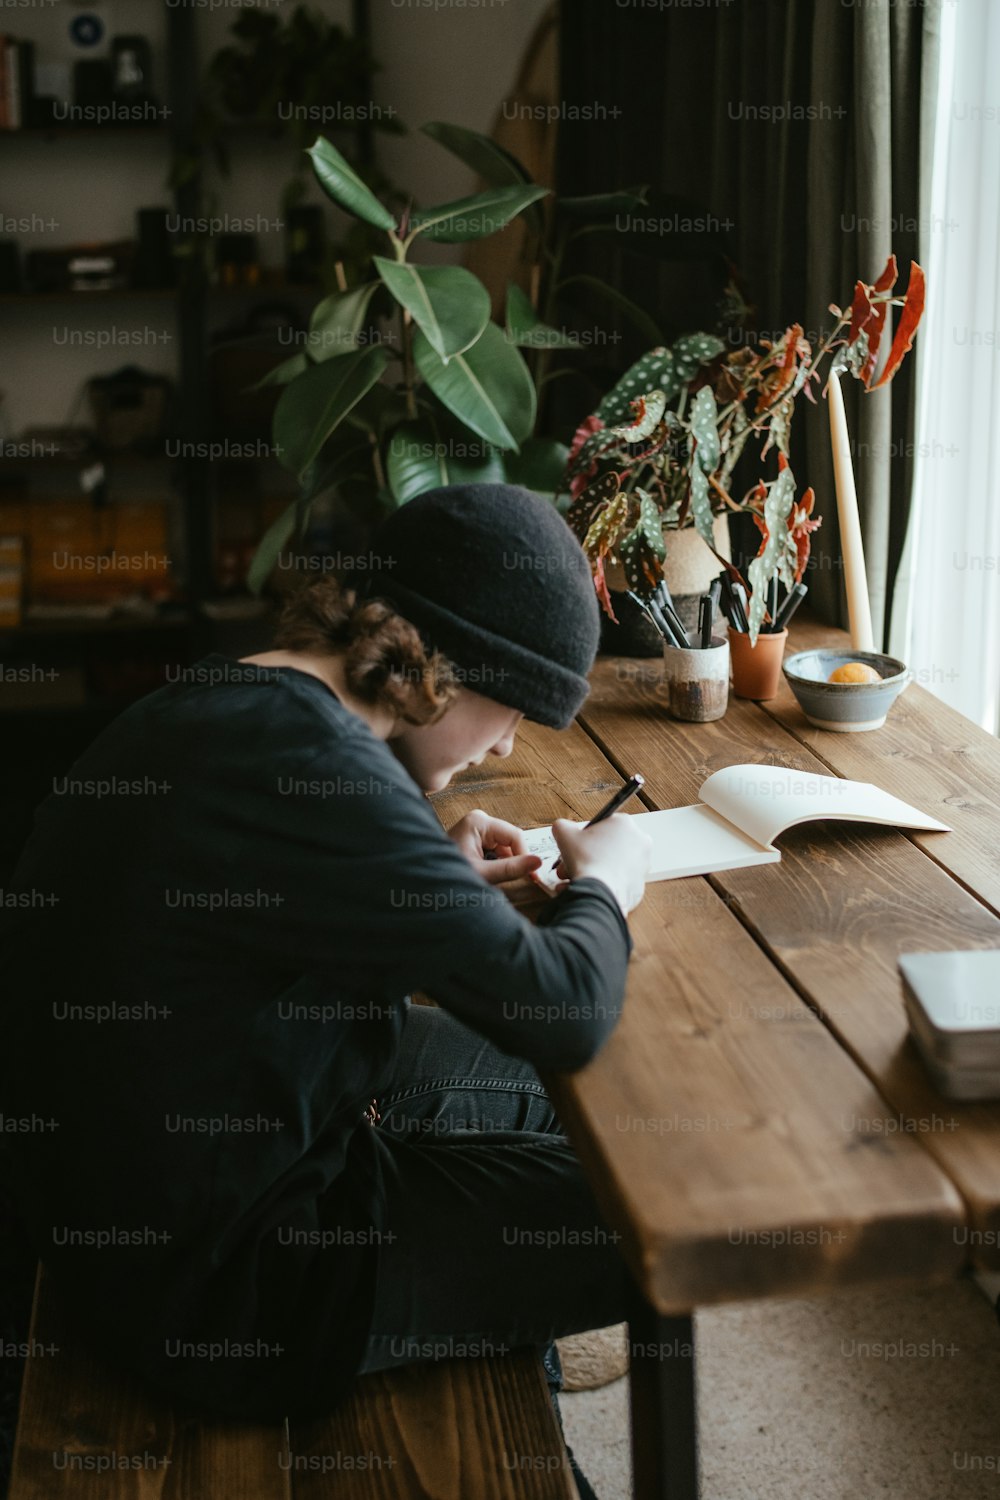 Una persona sentada en una mesa escribiendo en un pedazo de papel